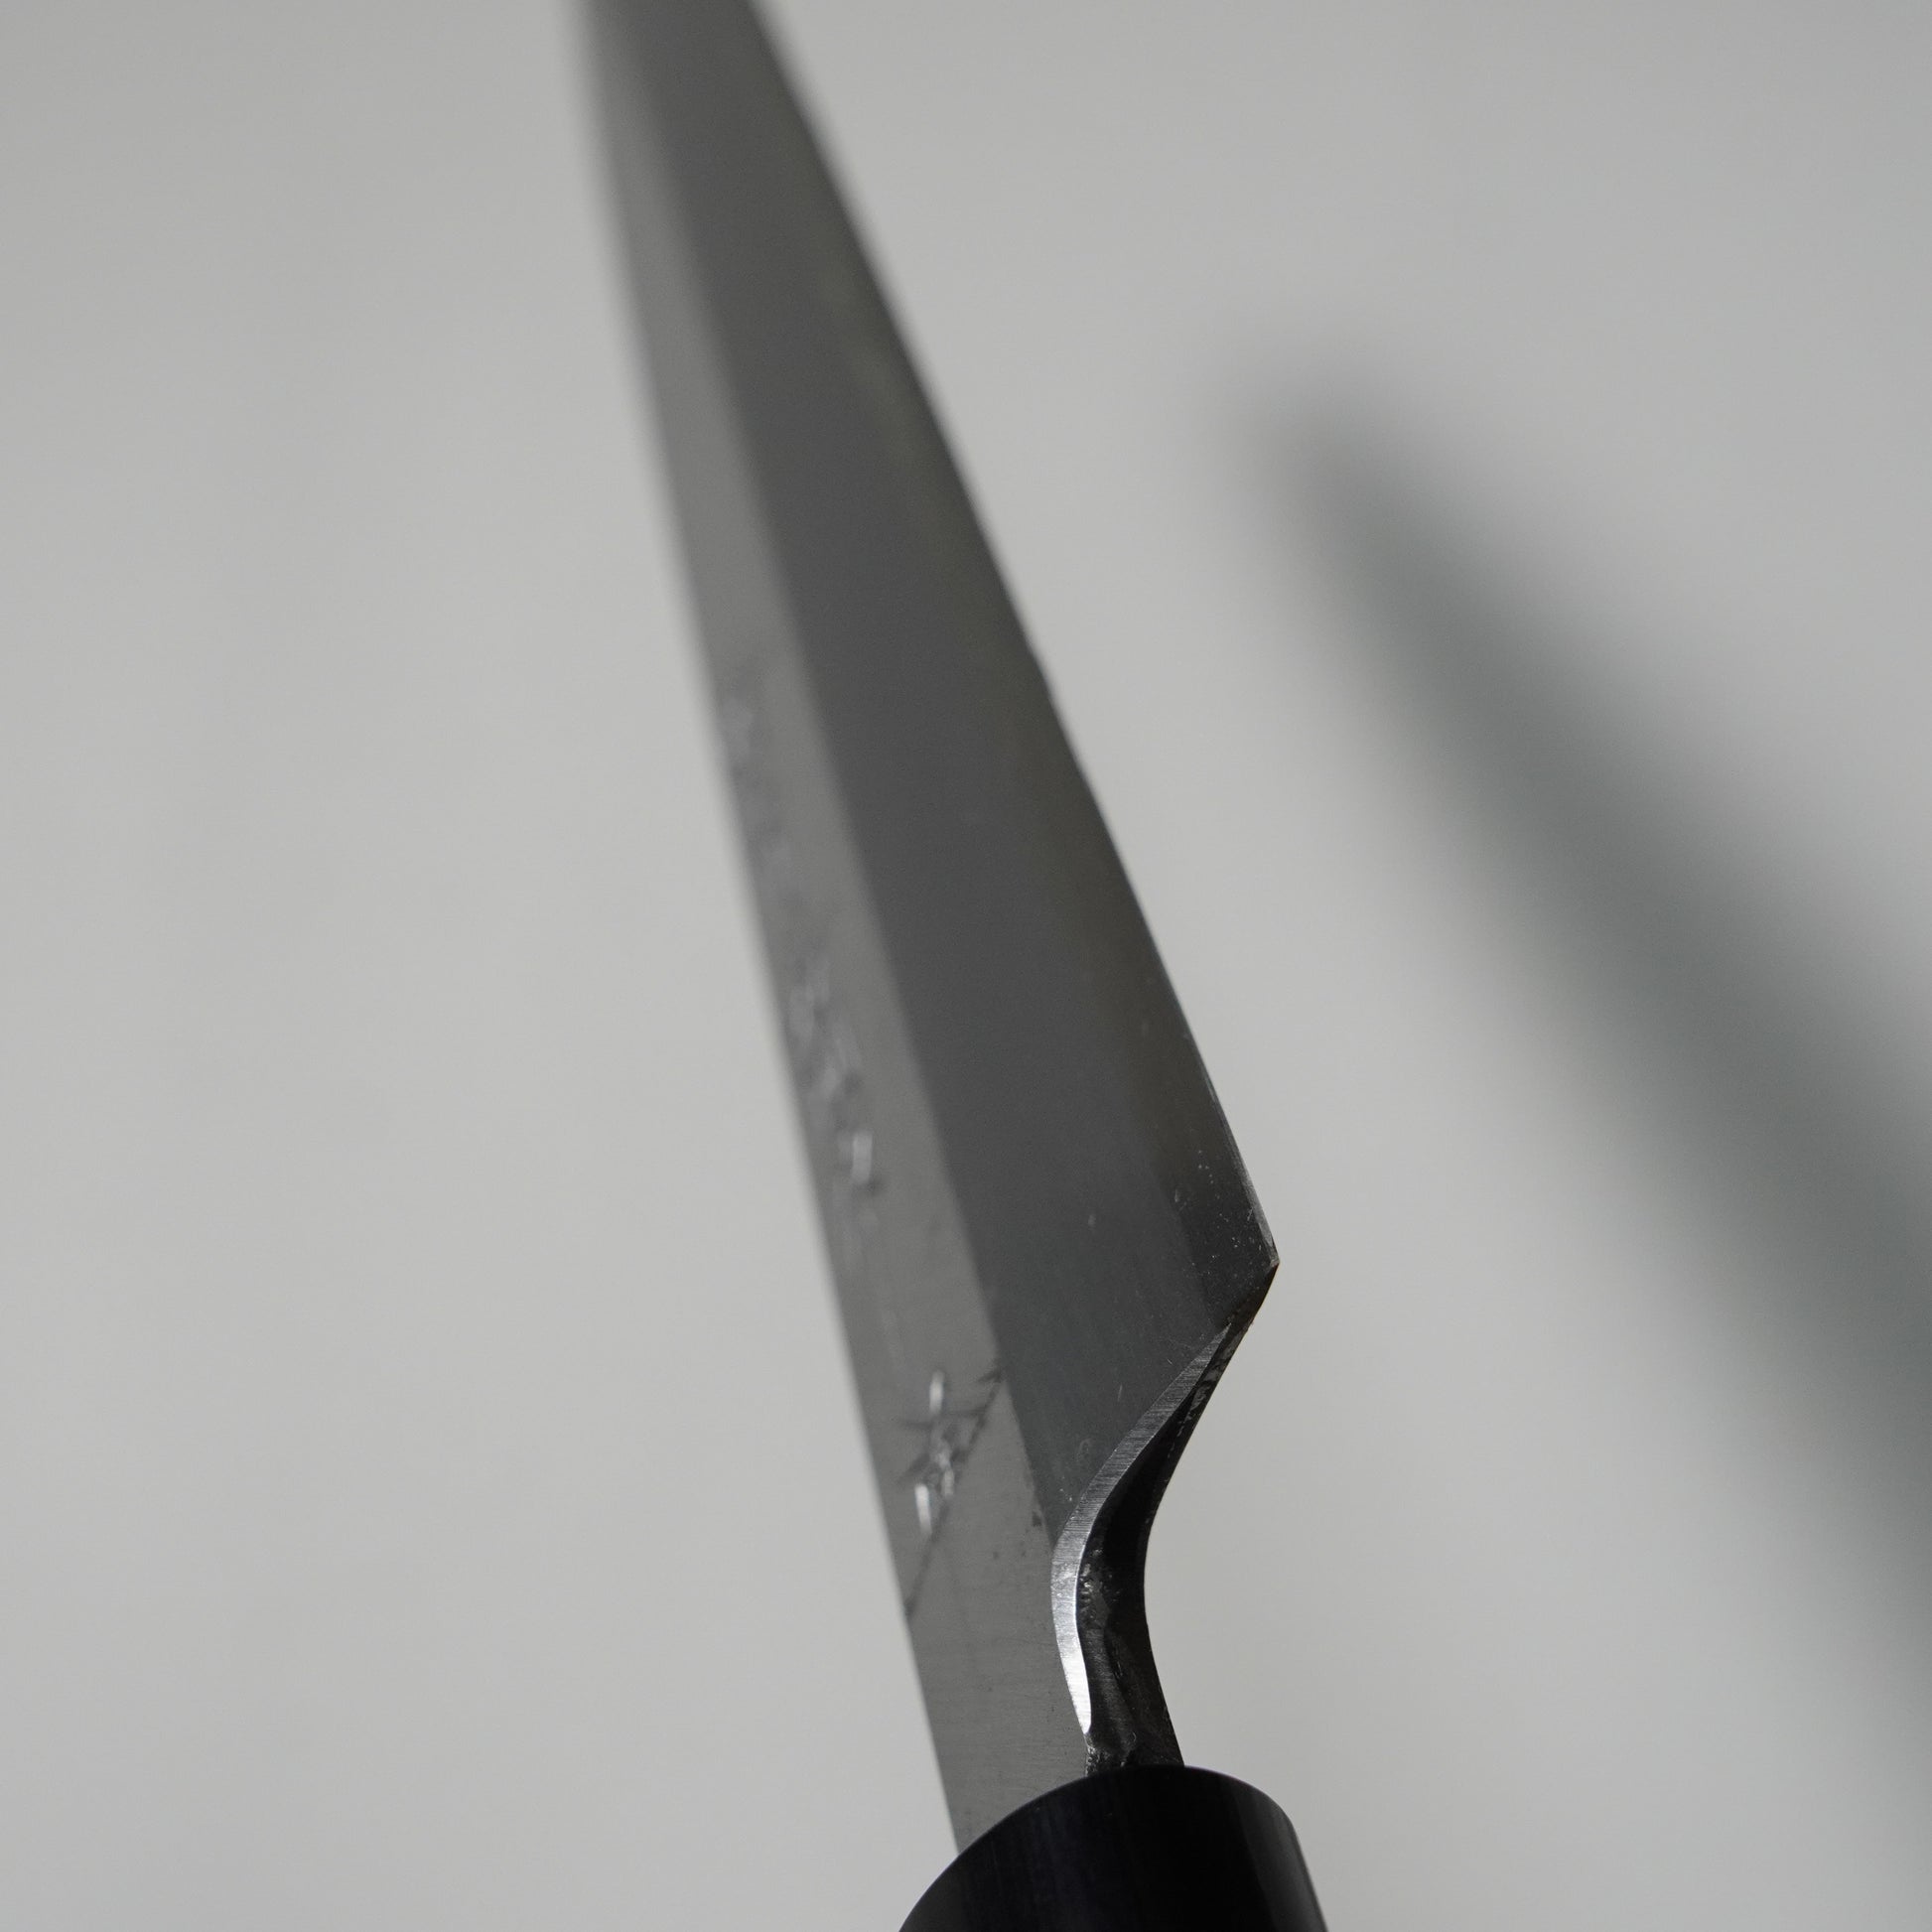 How to Hone a Knife and Keep It Sashimi Sharp